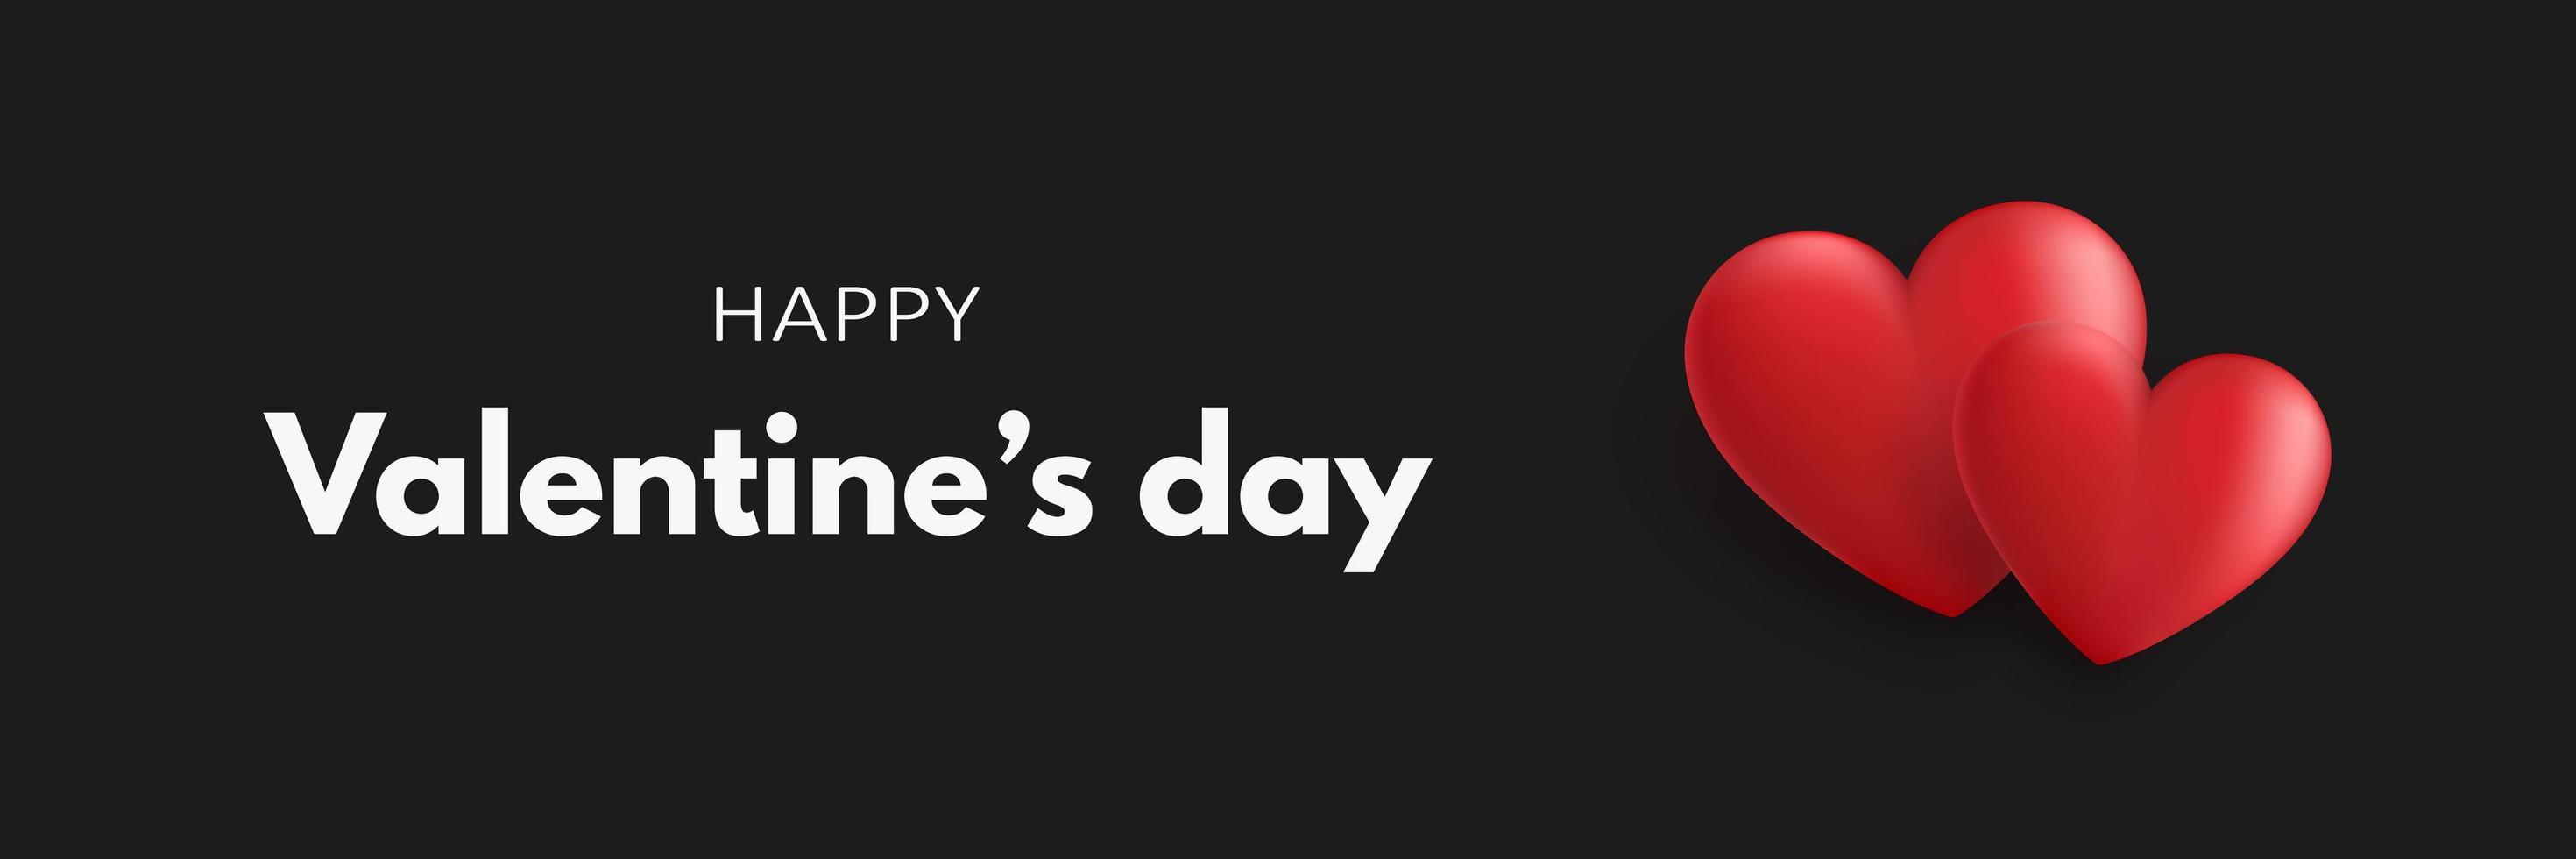 Happy Valentines Day Banner mit zwei roten 3D-Herzen auf schwarzem Hintergrund. Vektor-Illustration vektor